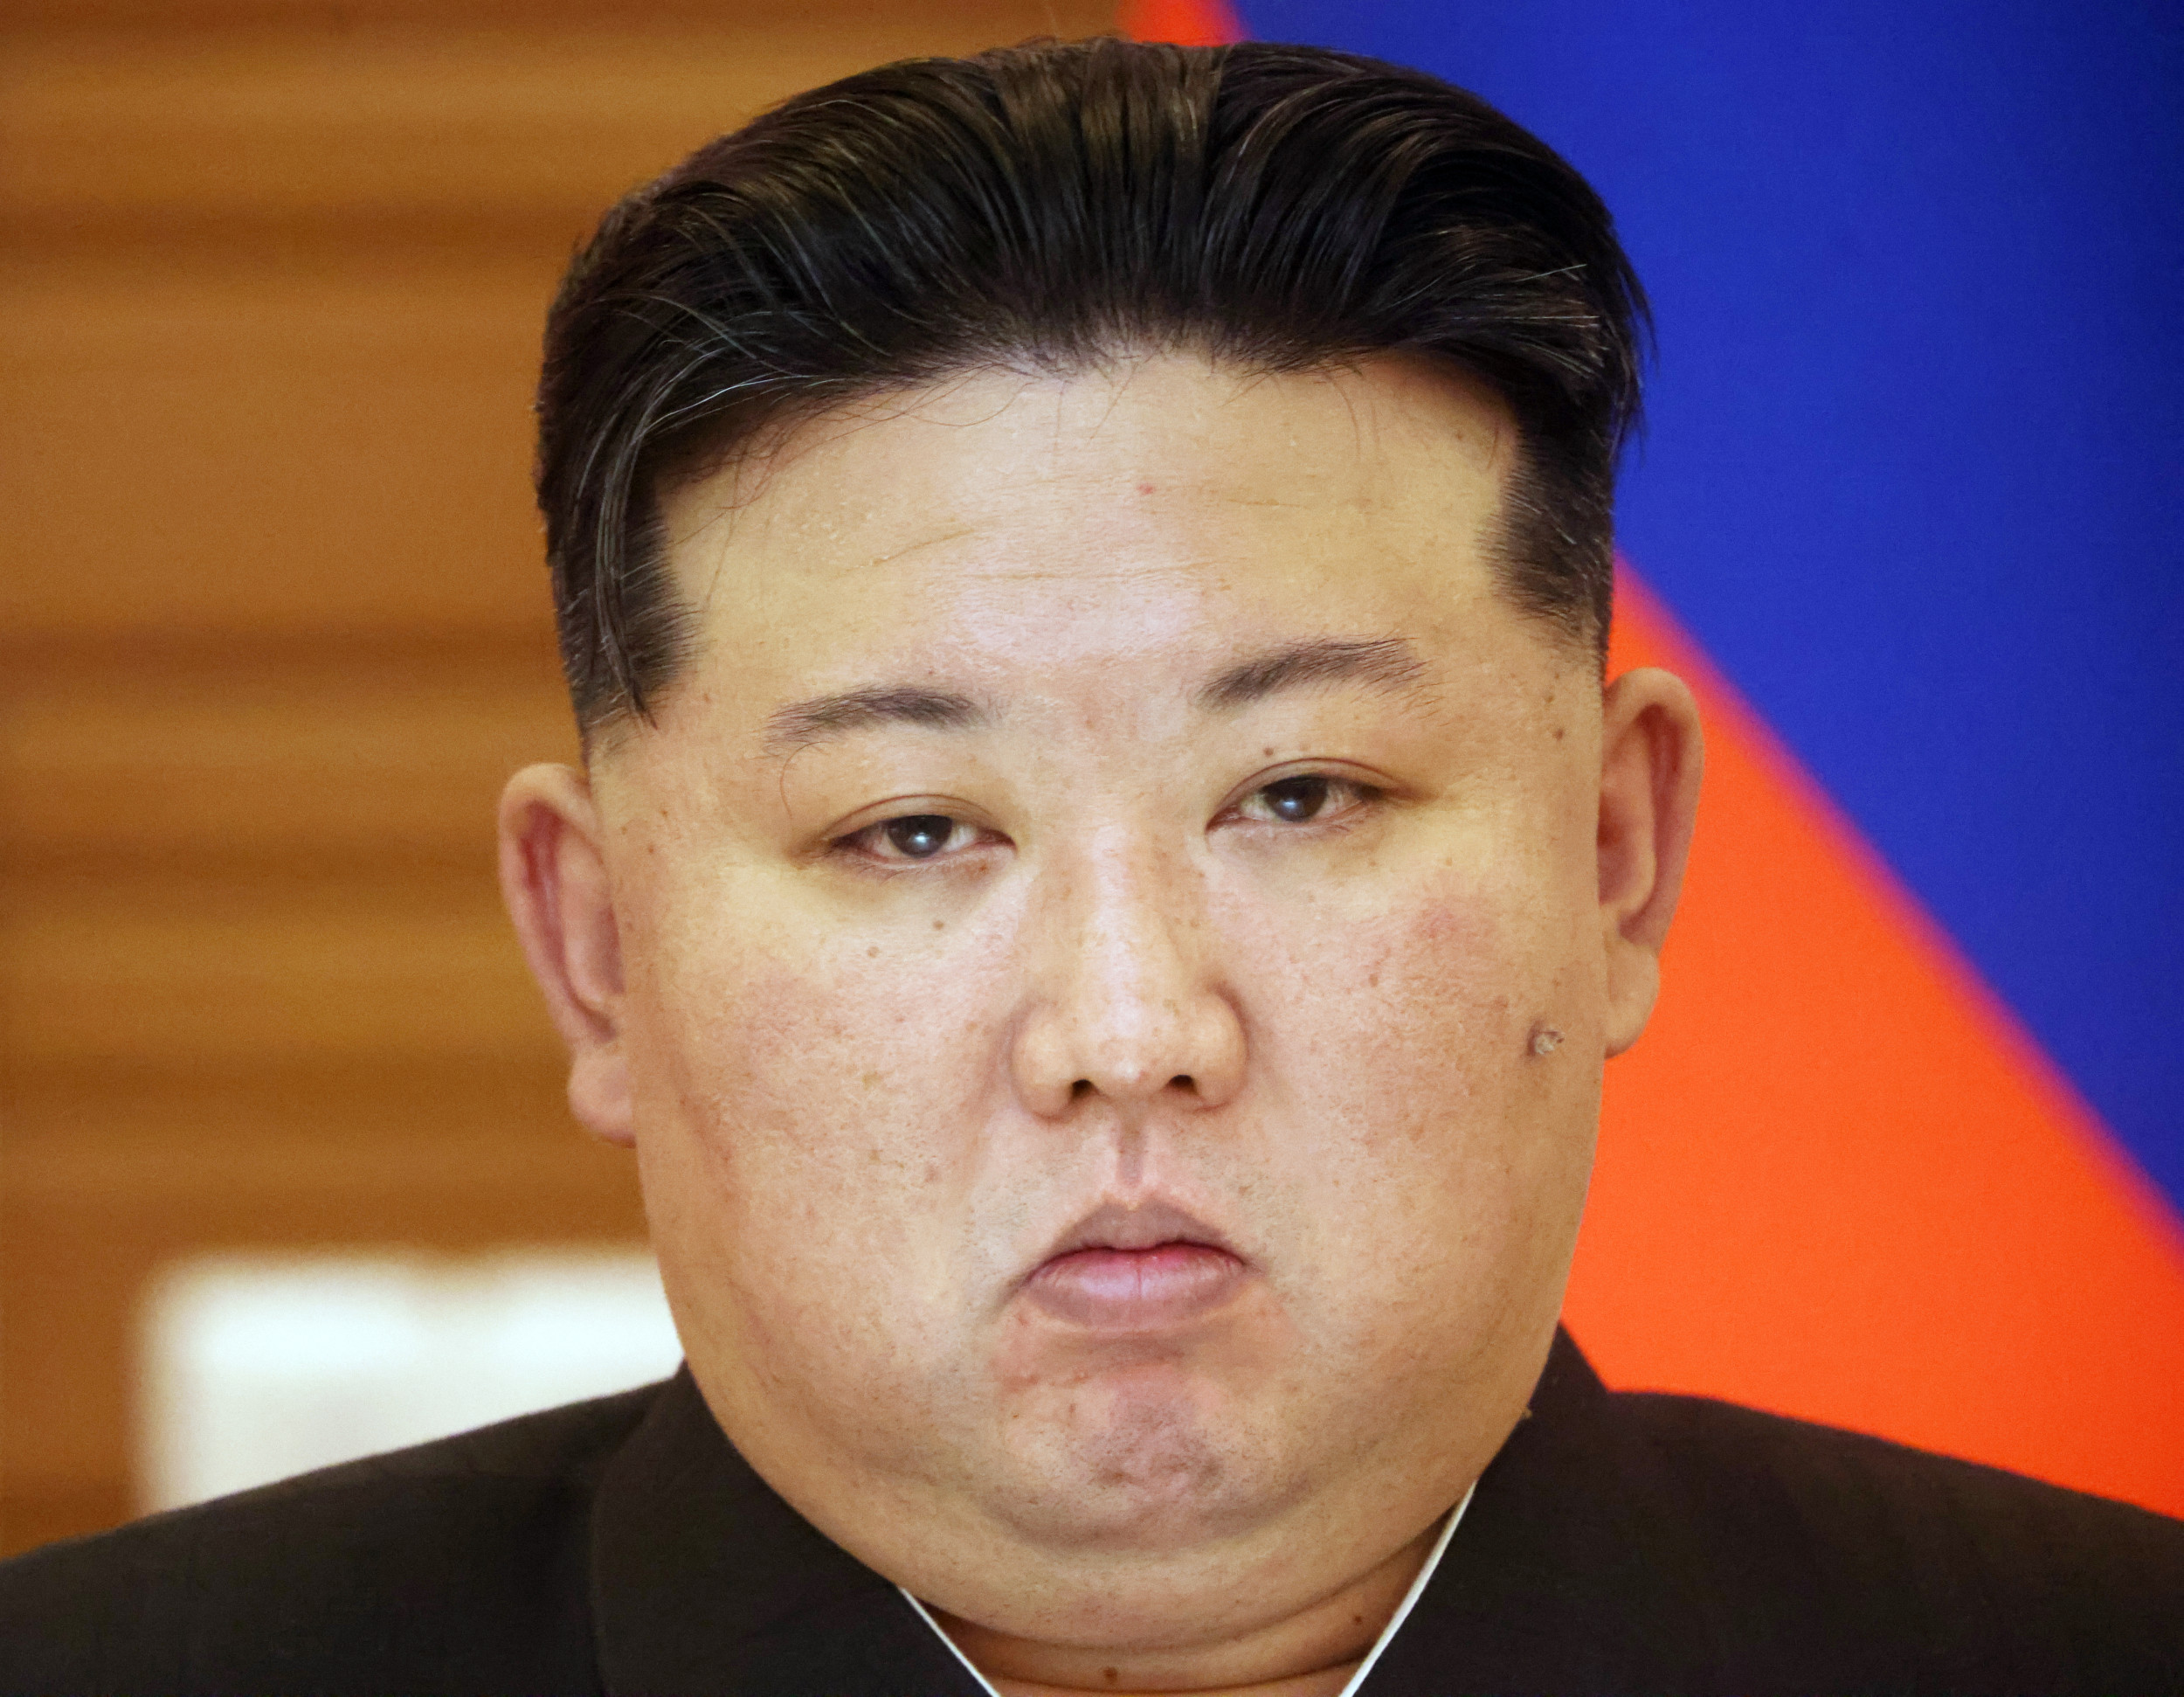 Северна Корея понася тежък удар, след като високопоставен служител избяга в Южна Корея